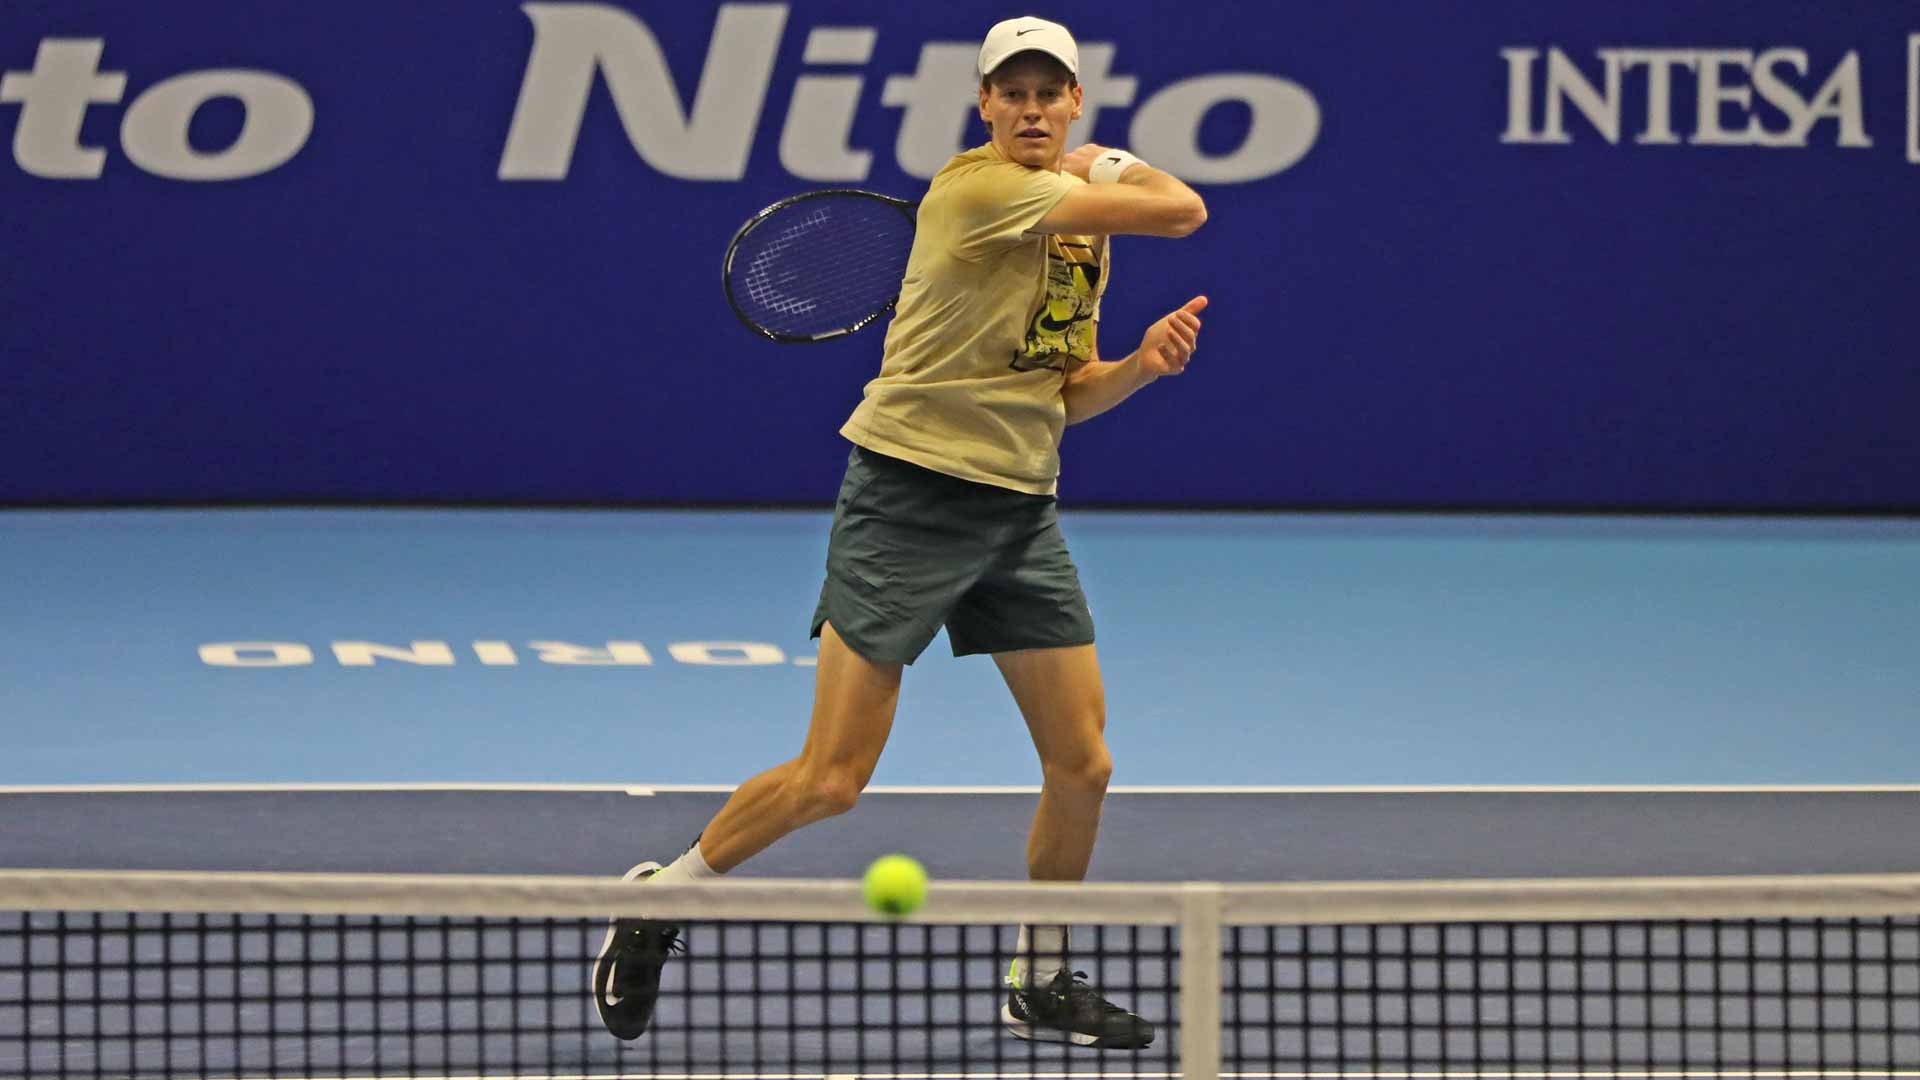 Jannik Sinner es el único italiano que competirá en las Nitto ATP Finals de este año.